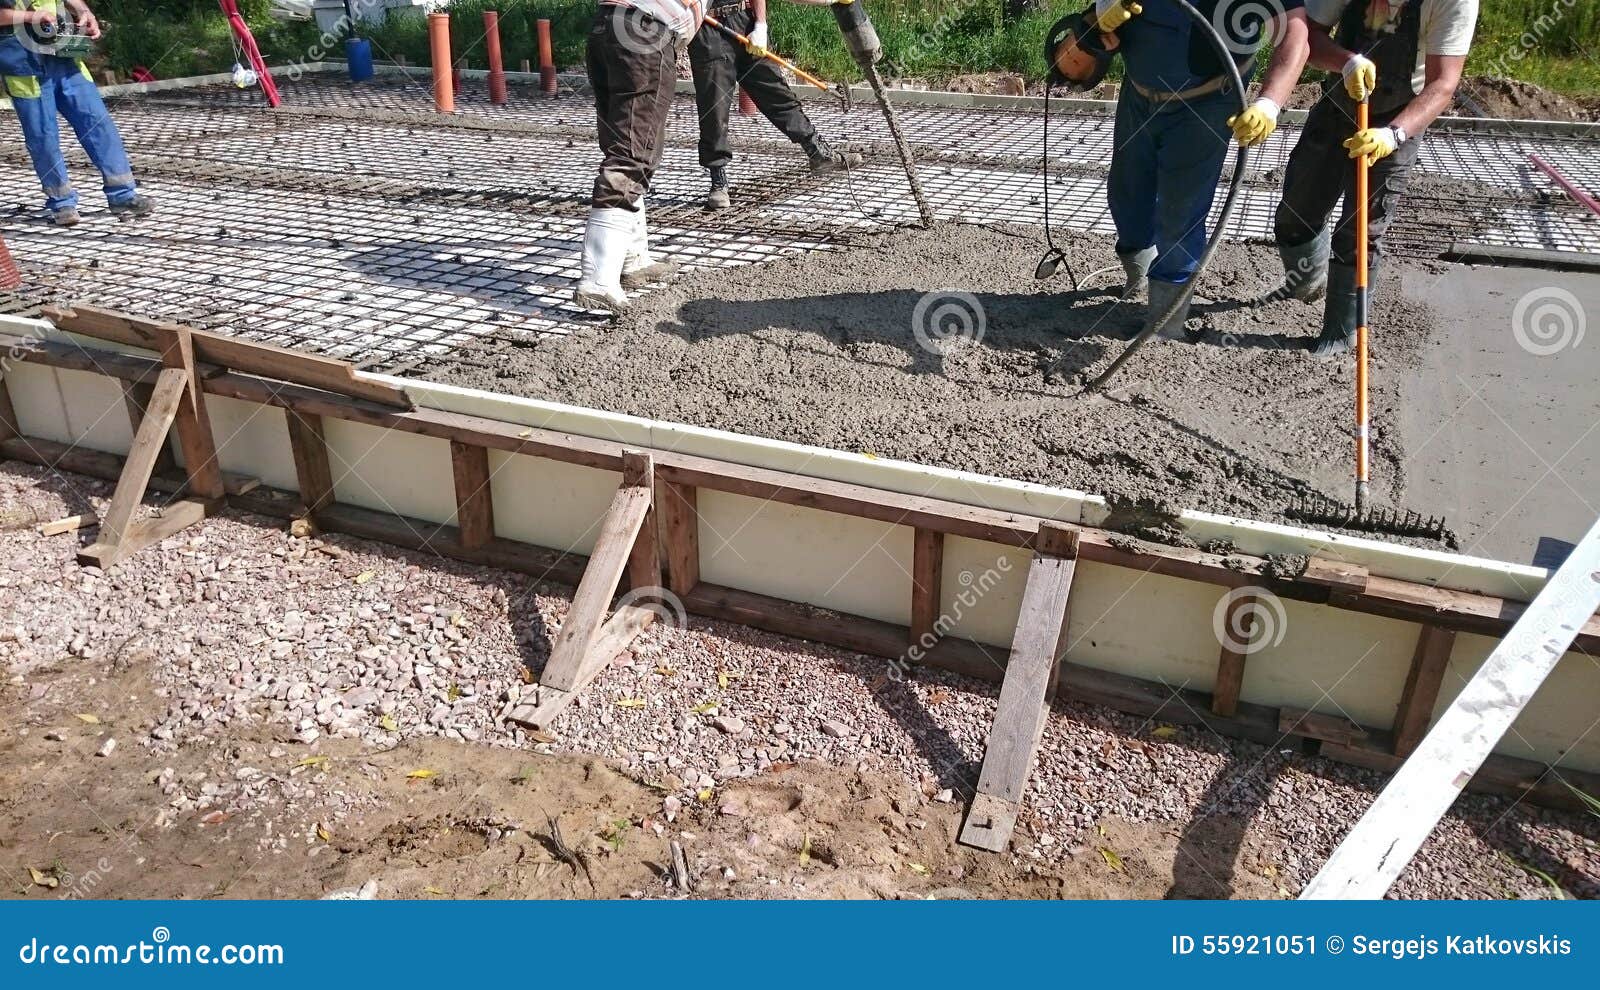 Когда снимать опалубку после заливки бетона. Фундамент готовые бригада рабочих. Фото готового фундамента с бетоном. Фото готового фундамента с бетоном для проекта.